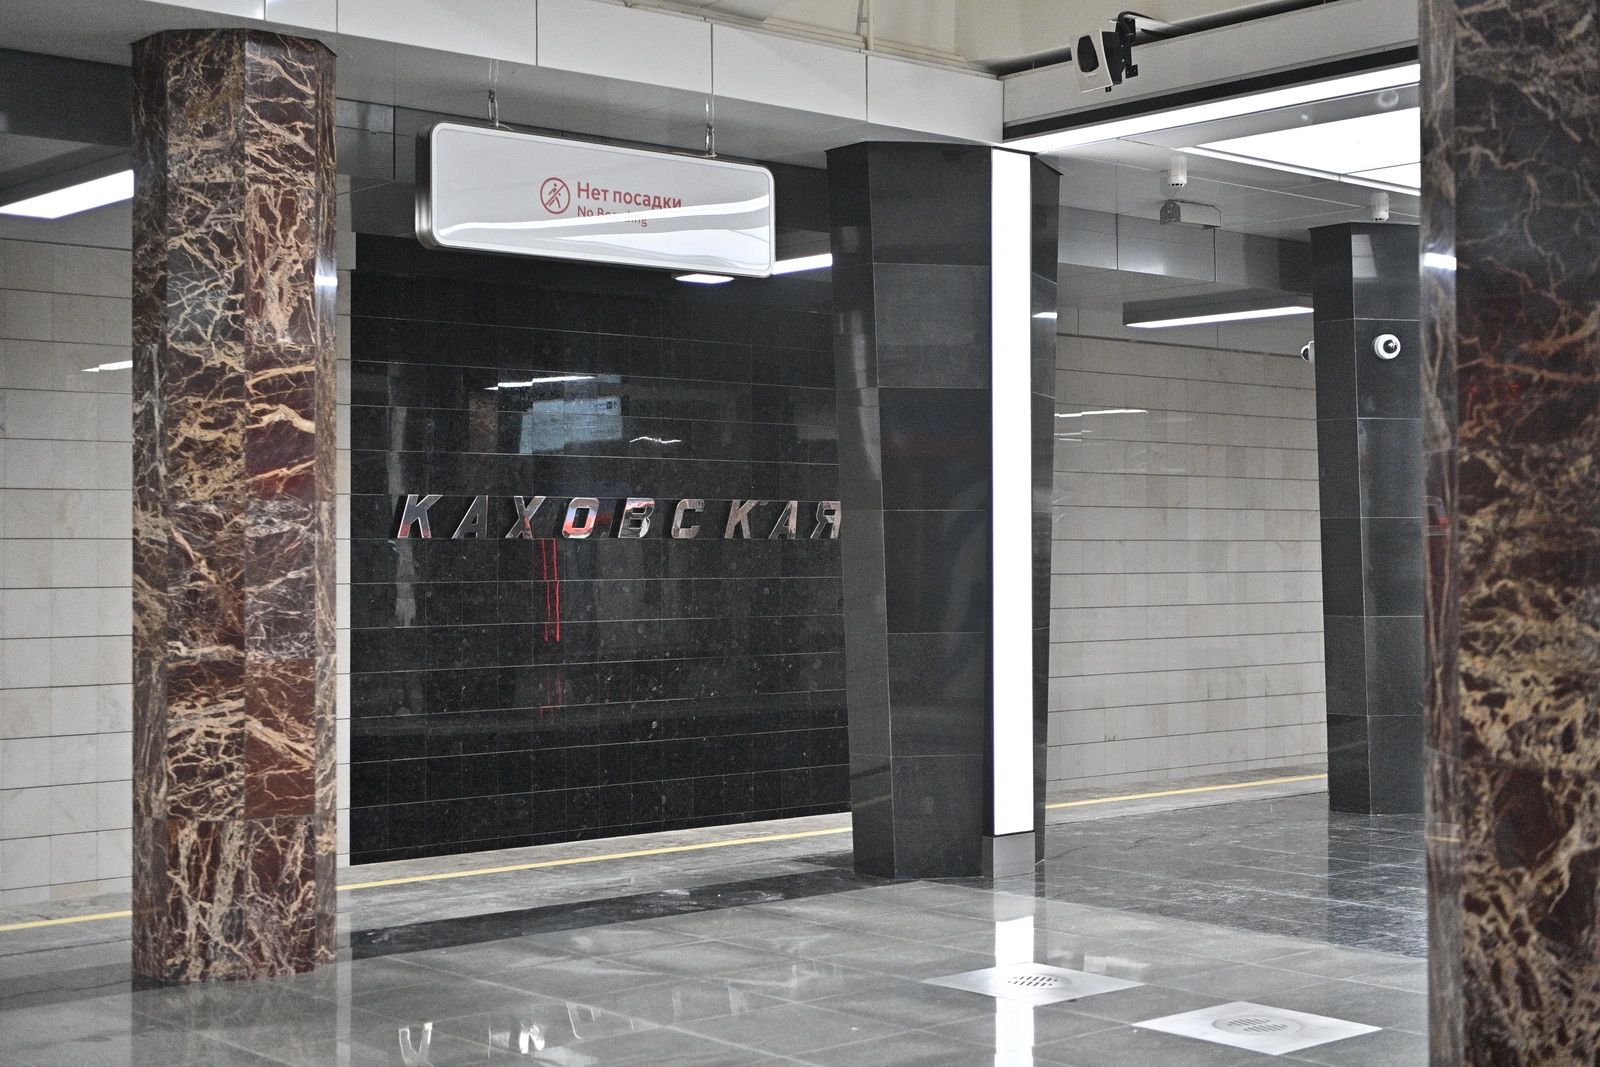 Завершается стройка пересадки между станциями метро «Каховская» и «Севастопольская»